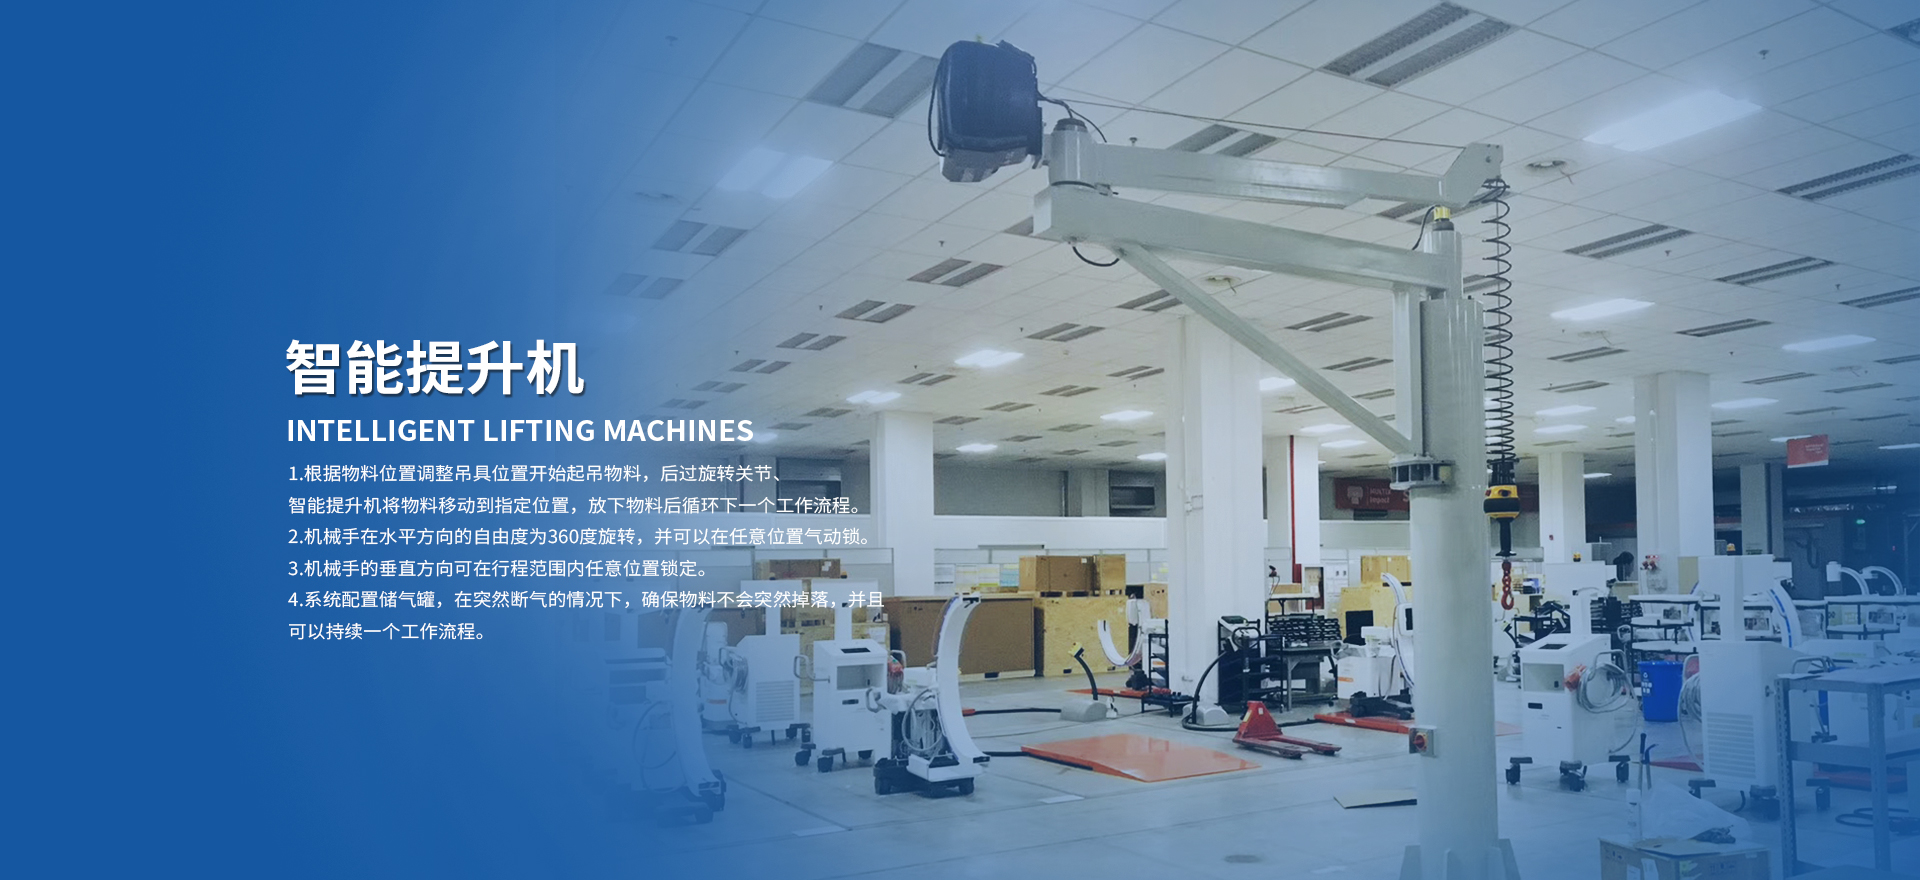  蘇州海駿自動化機械有限公司